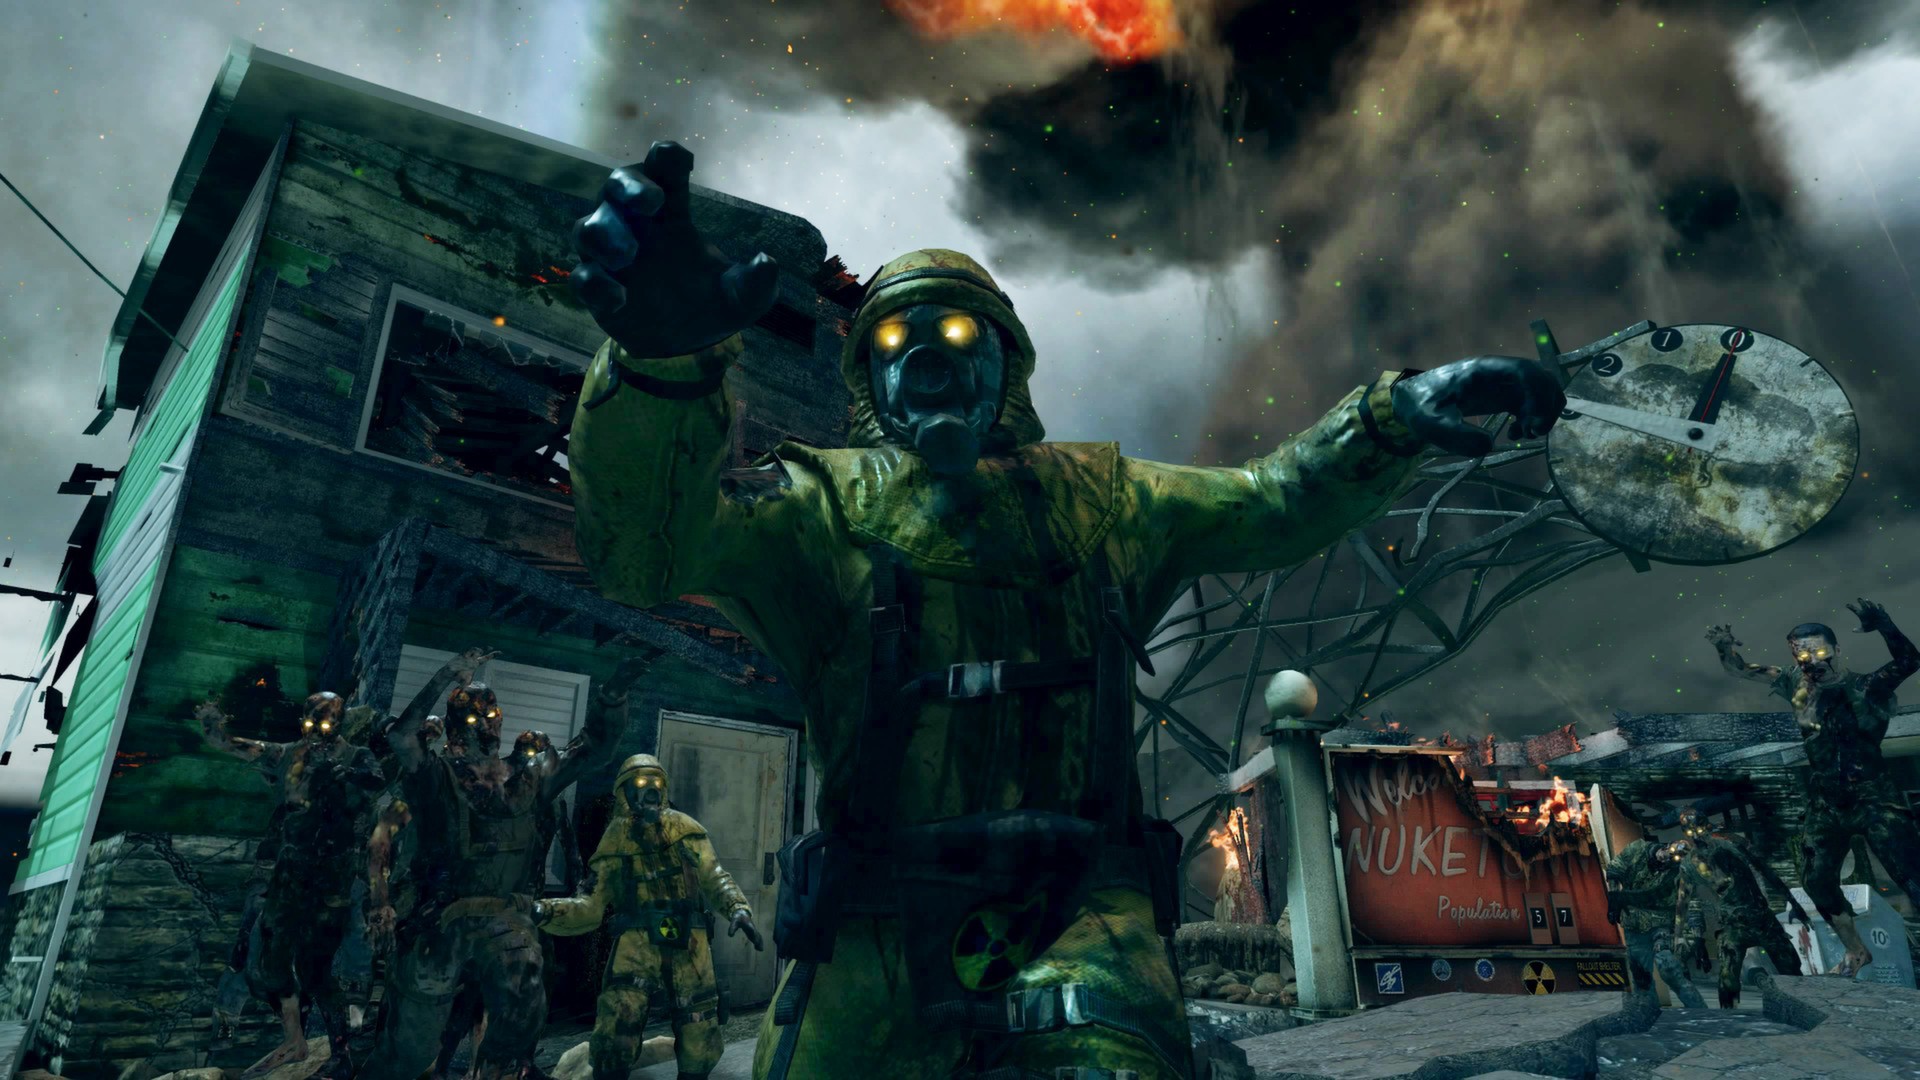 of Duty®: Black II - Nuketown Zombies Map on